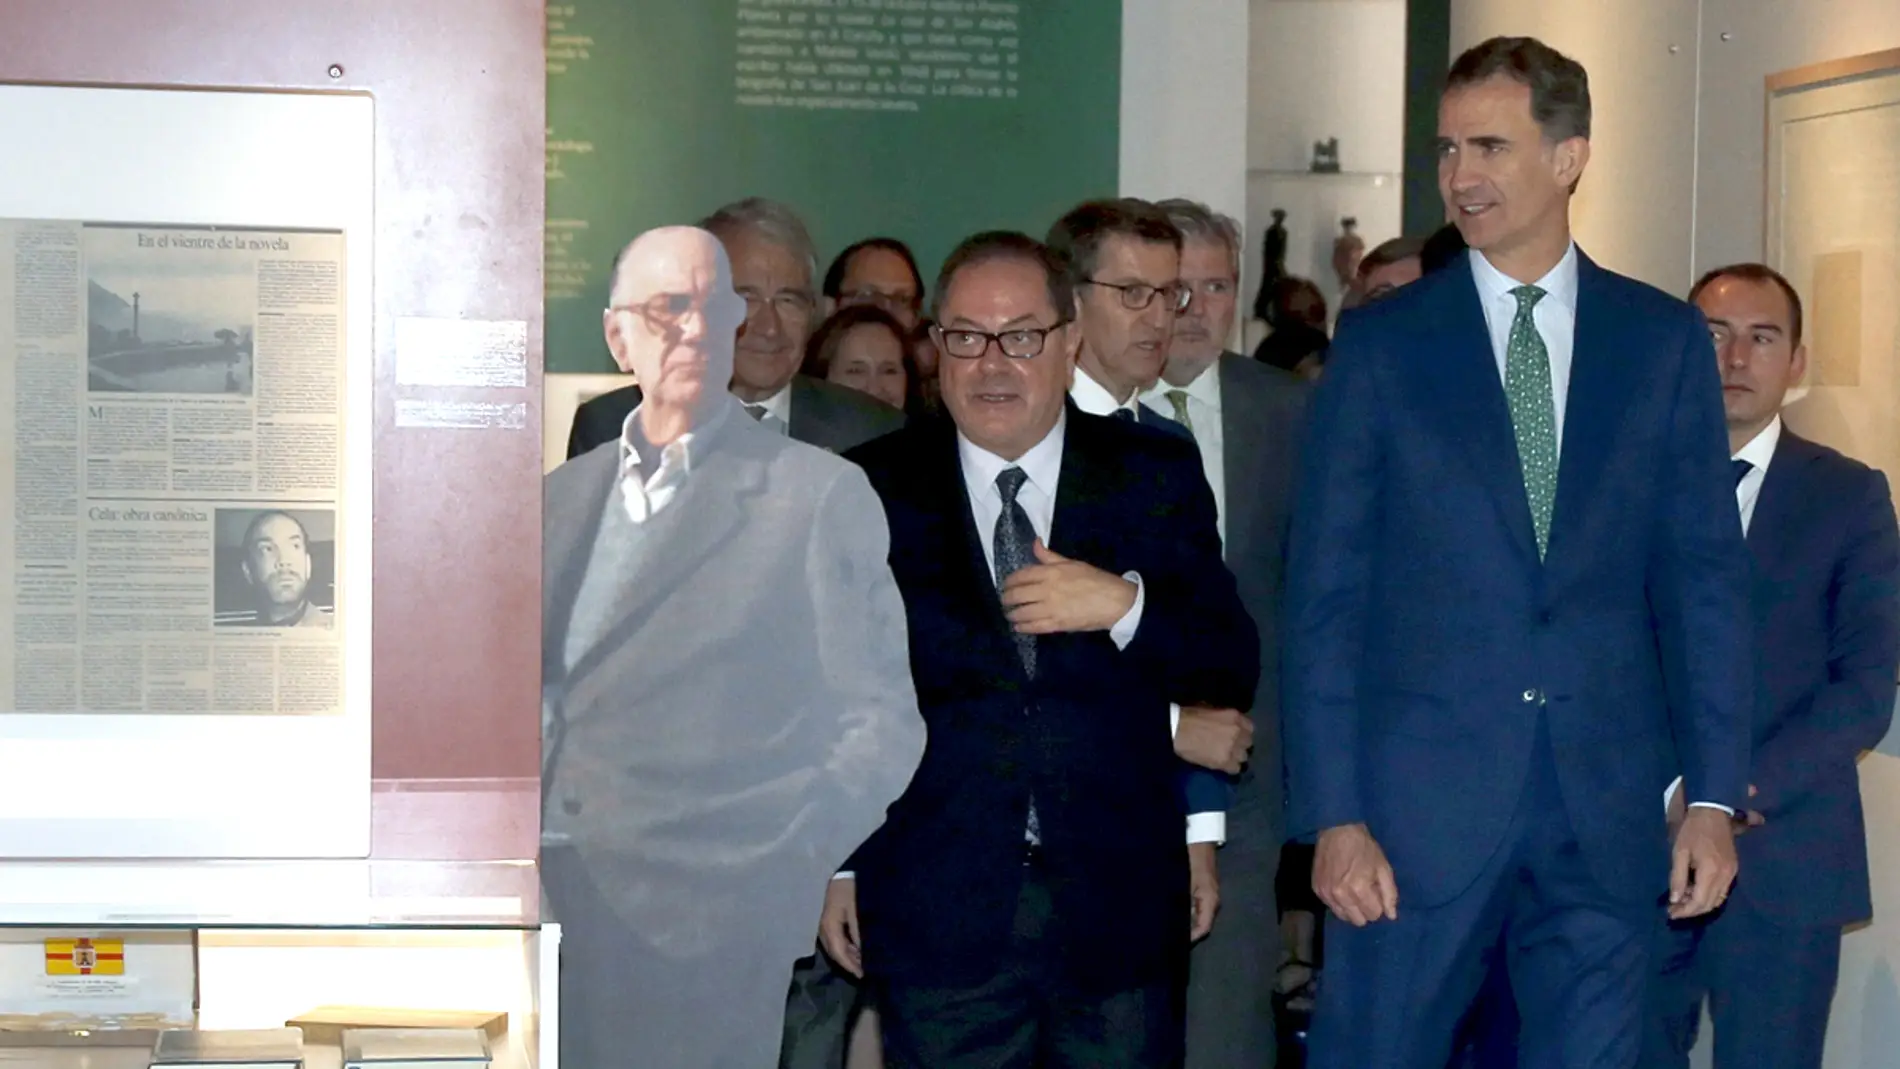 El Rey Felipe VI inaugura en la Biblioteca Nacional la exposición "CJC 2016. El centenario de un Nobel. Un libro y toda la soledad"